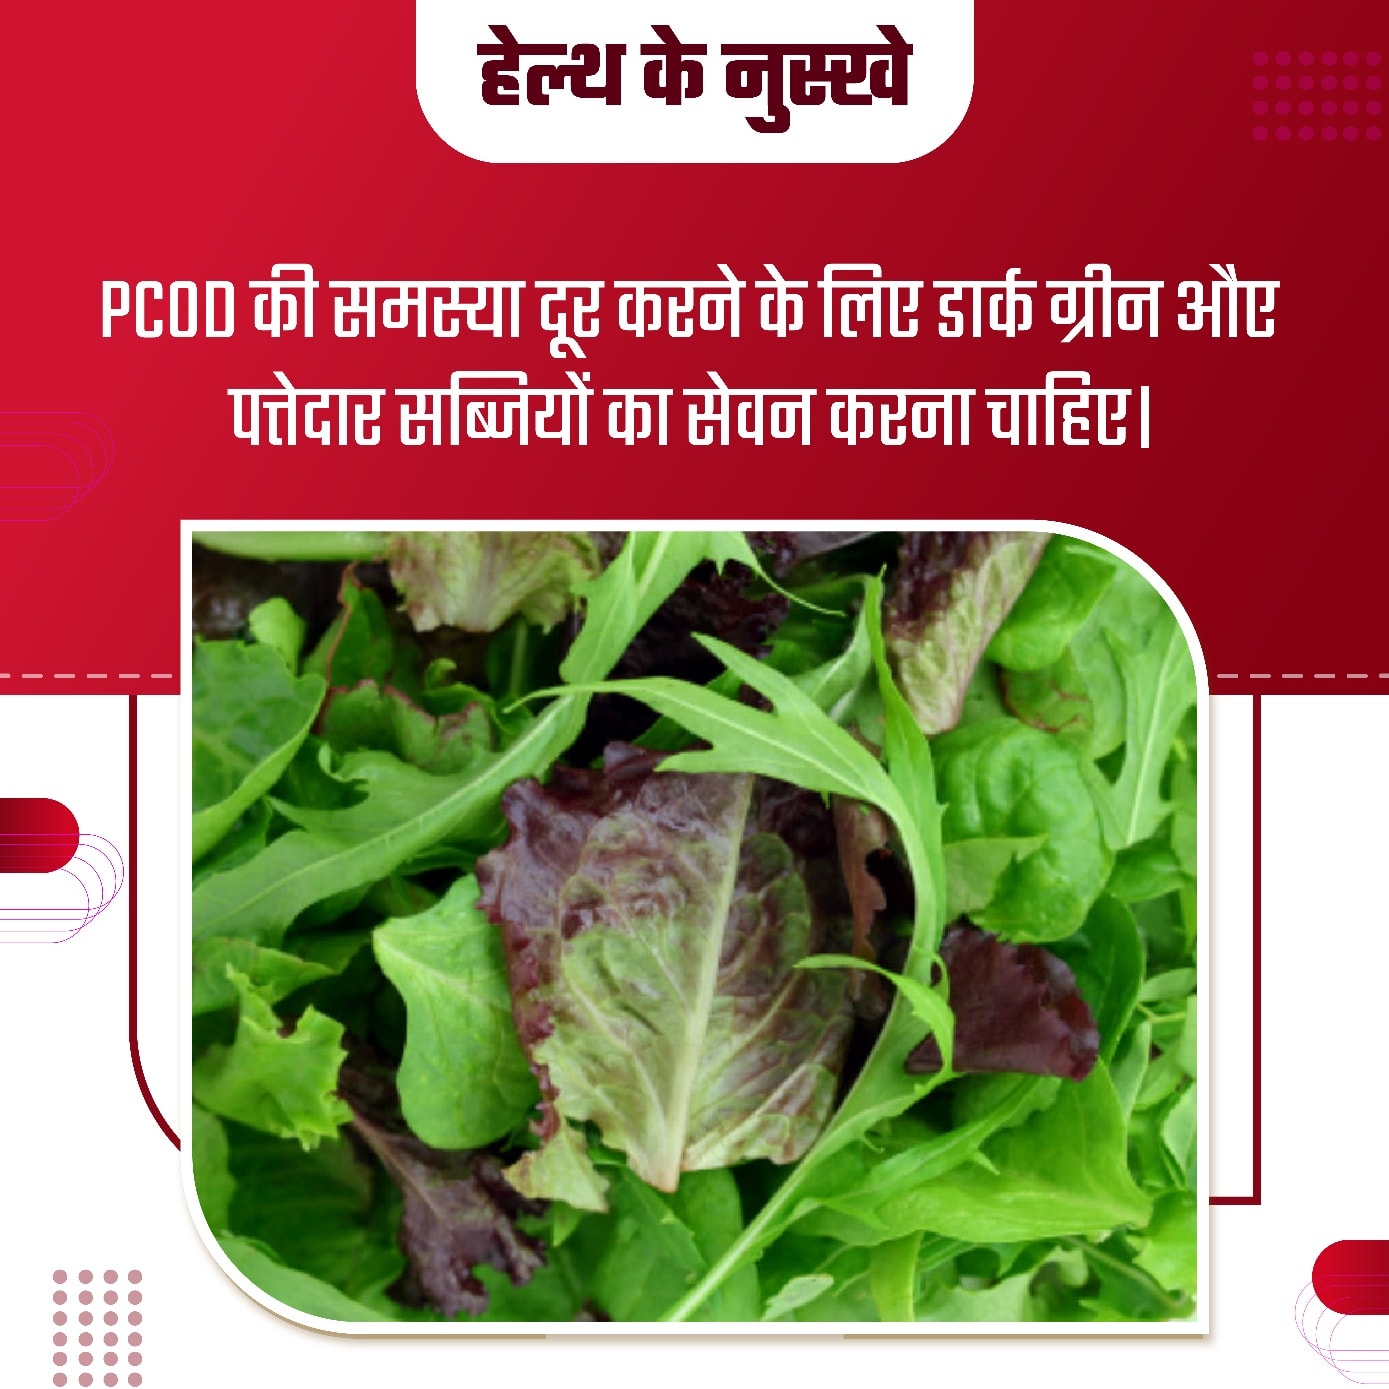 हारी सब्जी का सेवन करने से PCOD की समस्या में लाभ मिलता हैं।